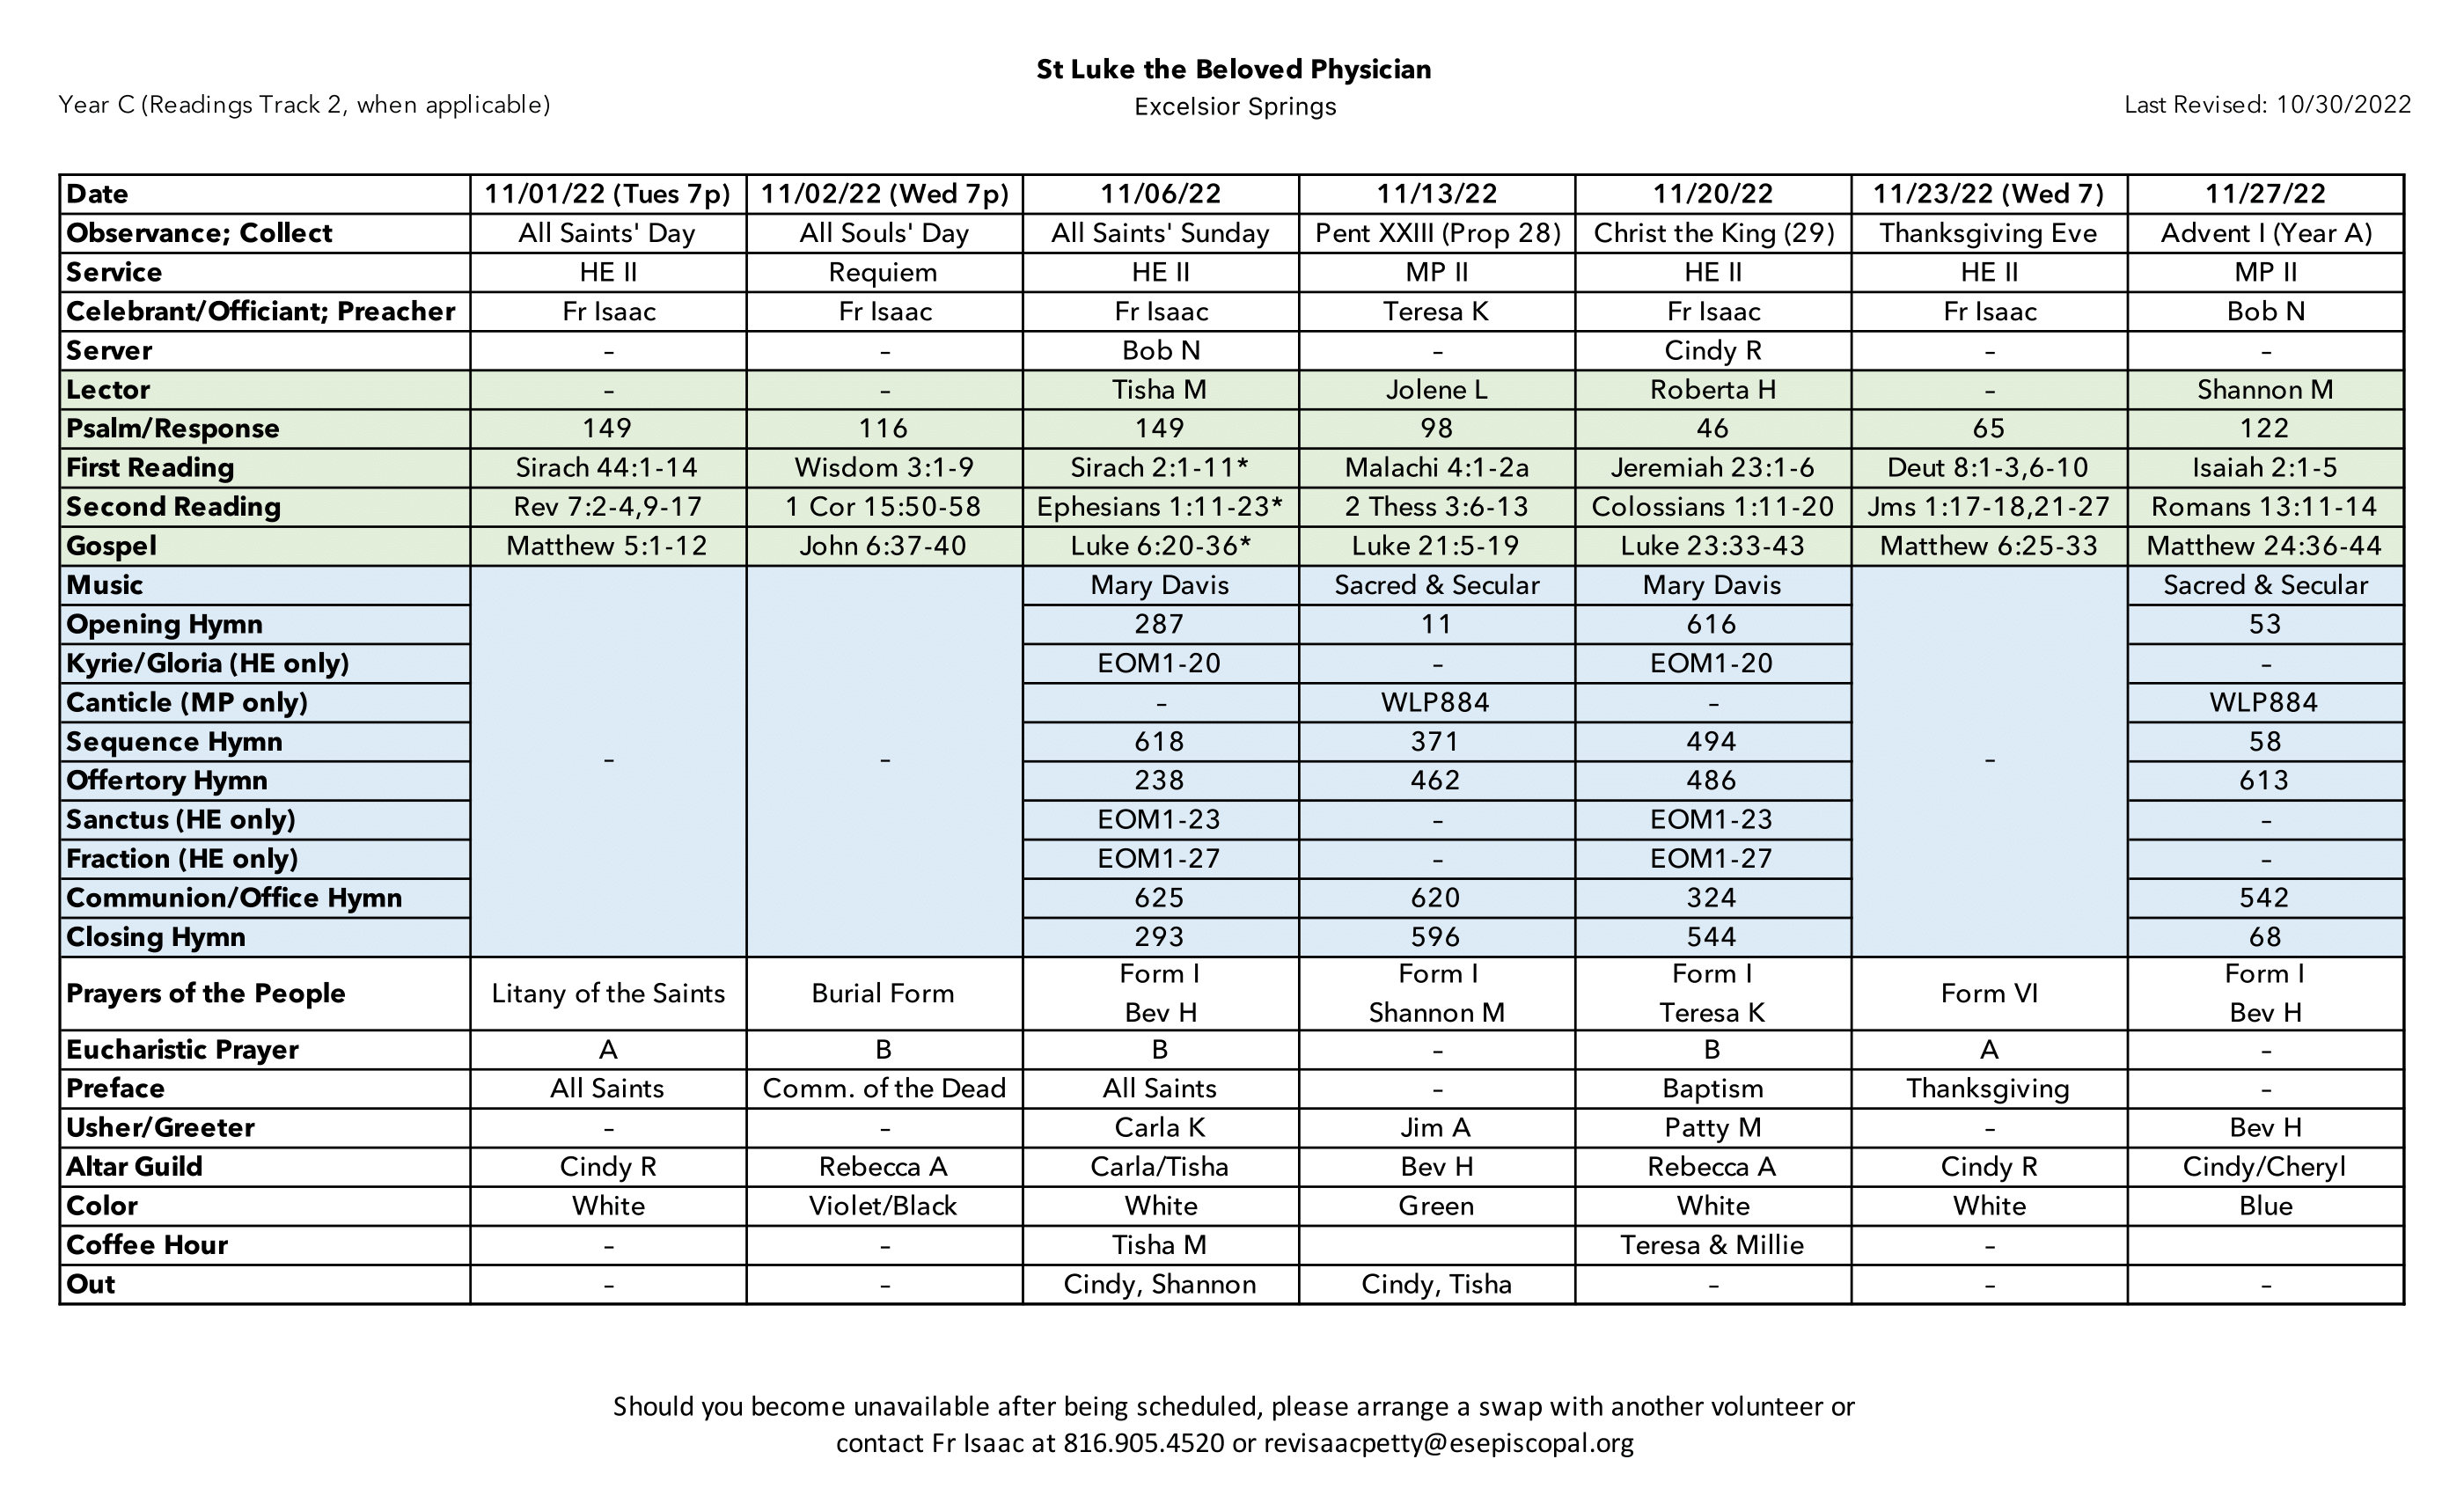 Nov22 Scheduling-1